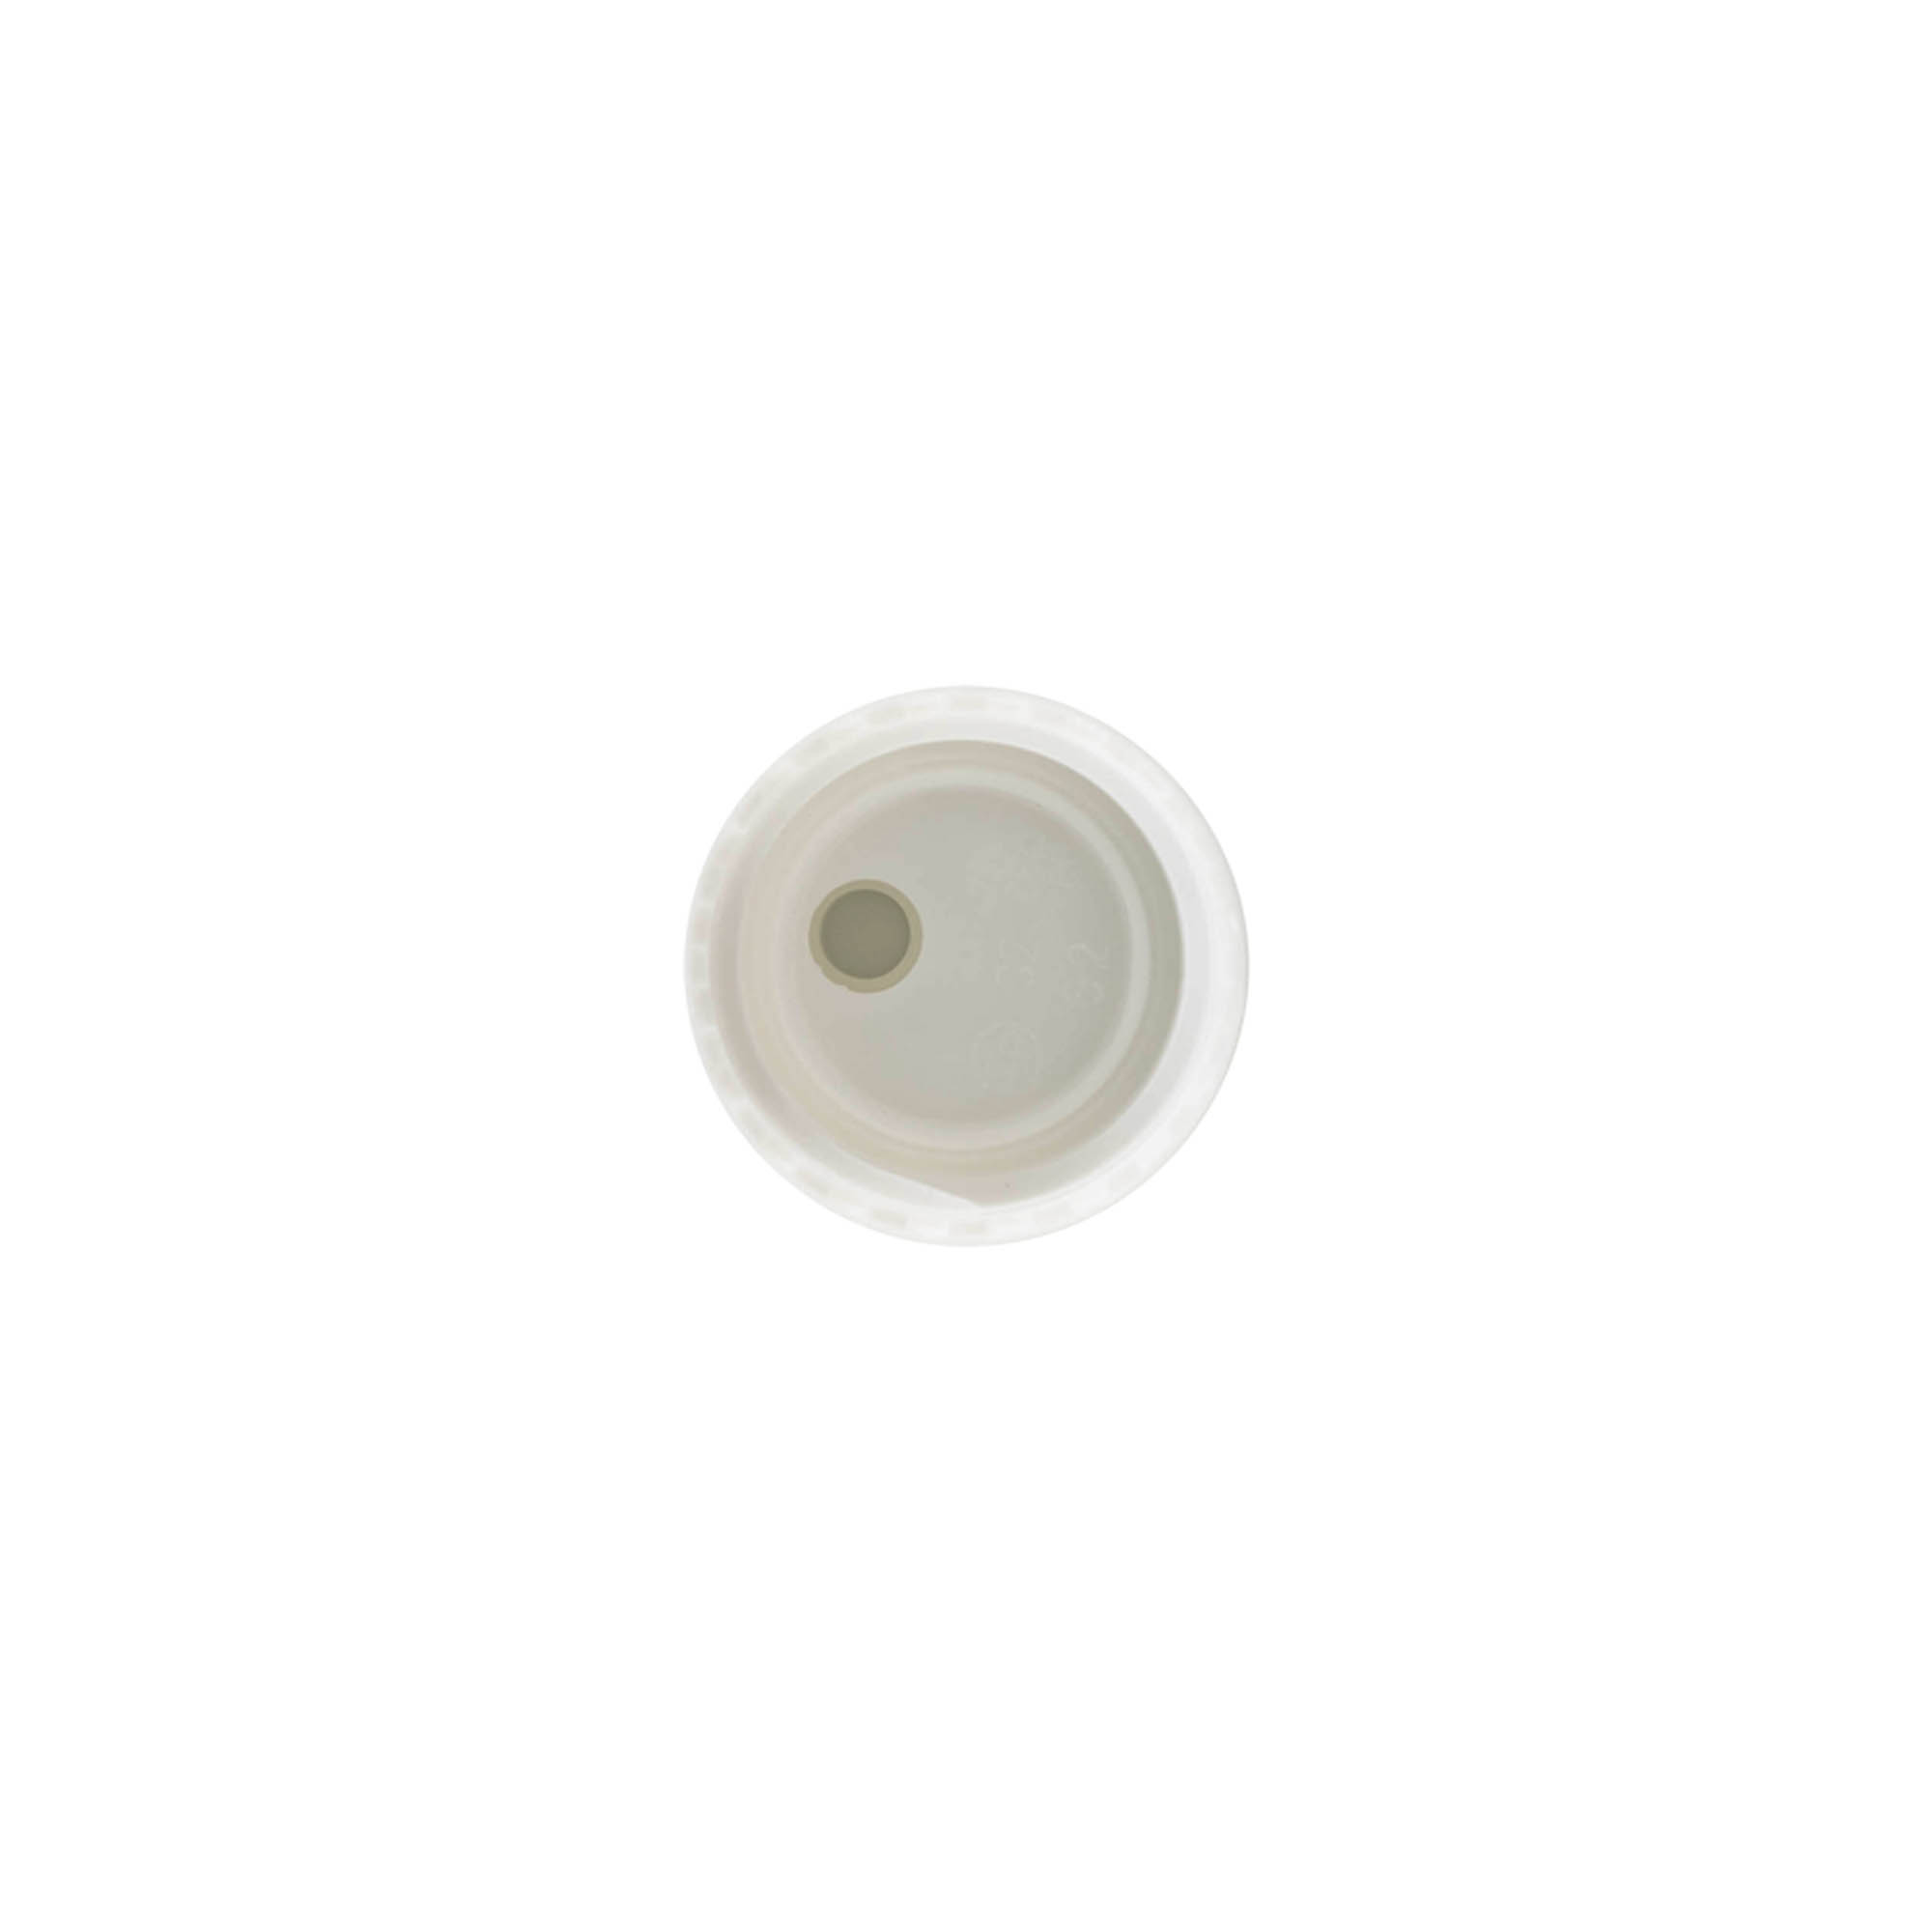 Schraubverschluss Disc Top, PP-Kunststoff, weiß, für Mündung: GPI 24/410